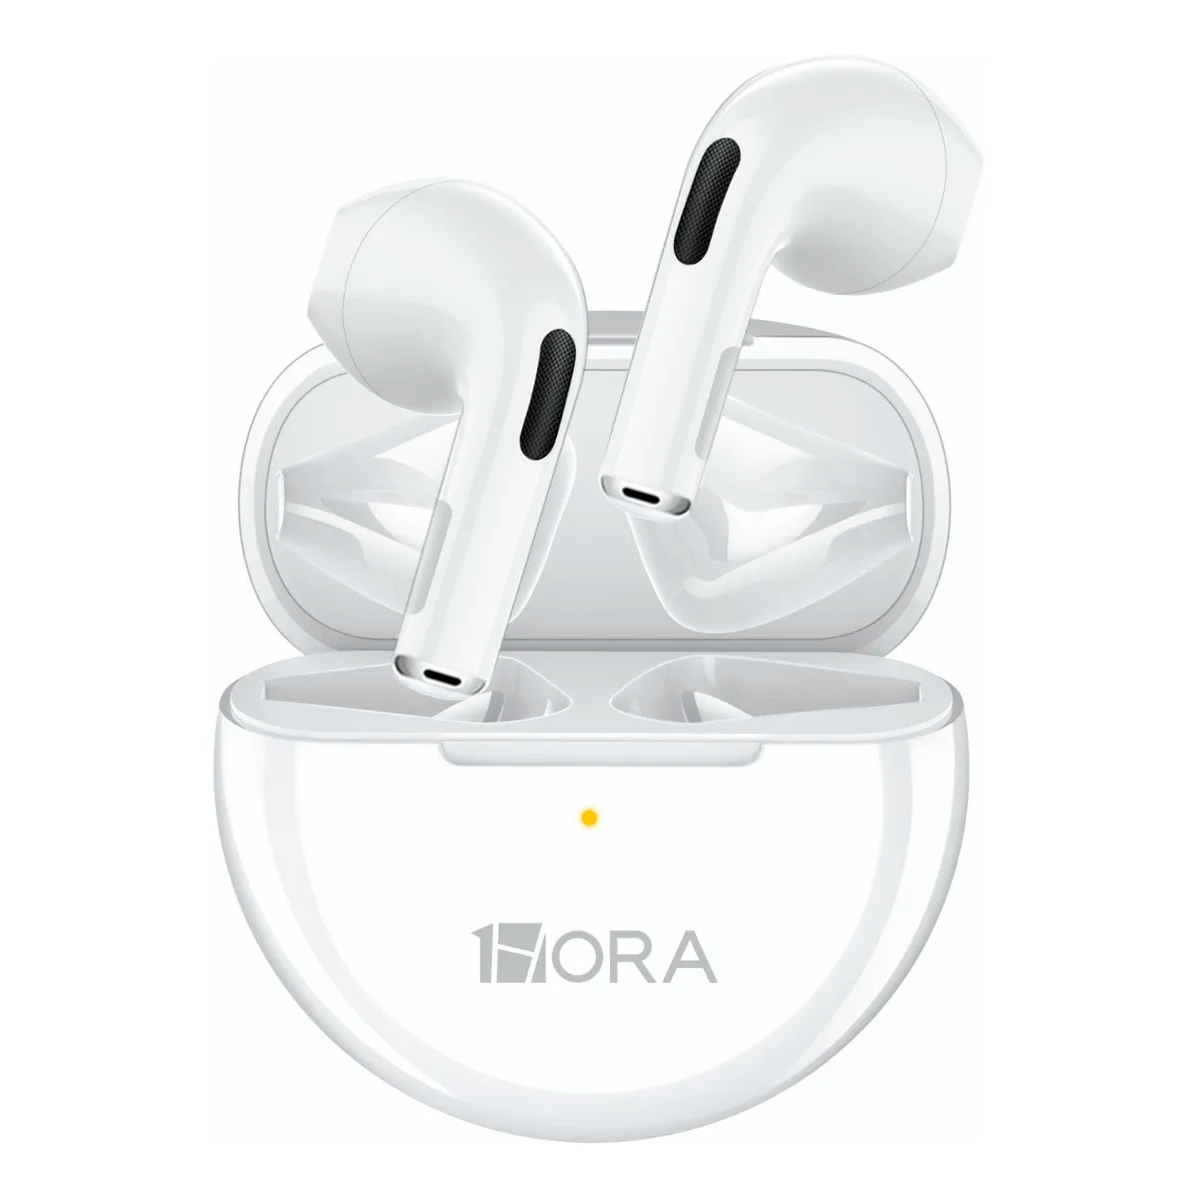 Audifonos Inalámbricos In-ear Manos Libres Aut119 1 Hora Con Bluetooth 5.0 Diseño Ergonómico Color Blanco